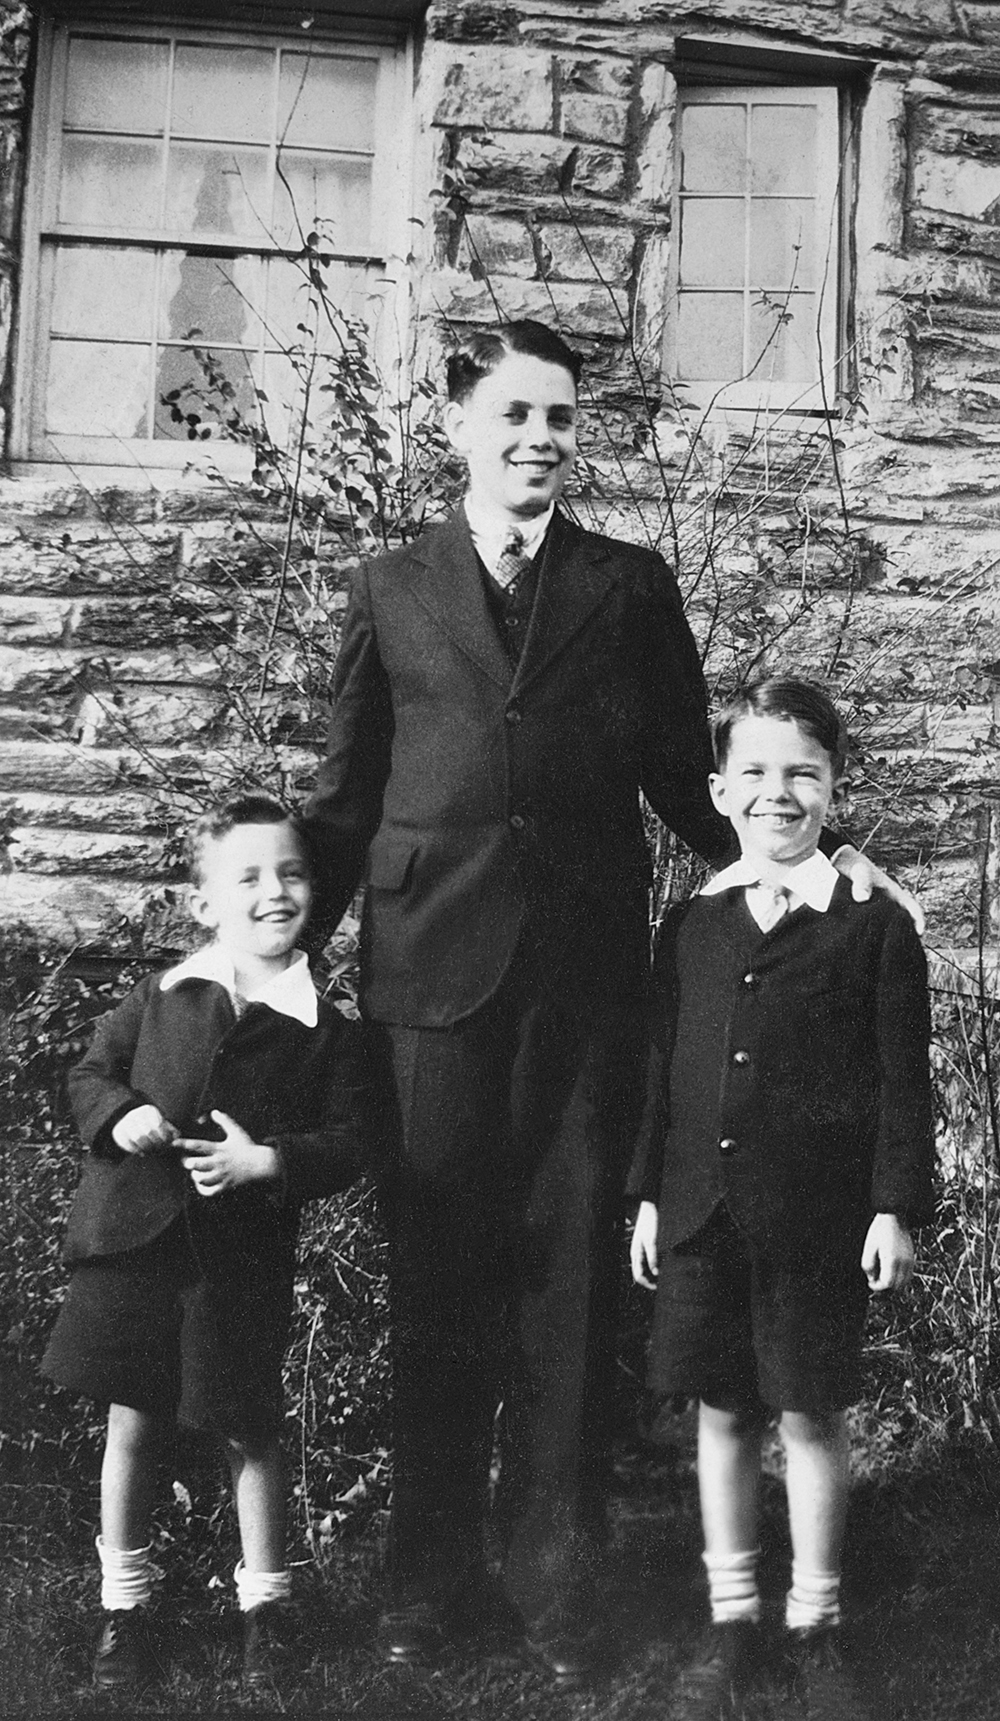 Richard, Buddy and Doug, 1934